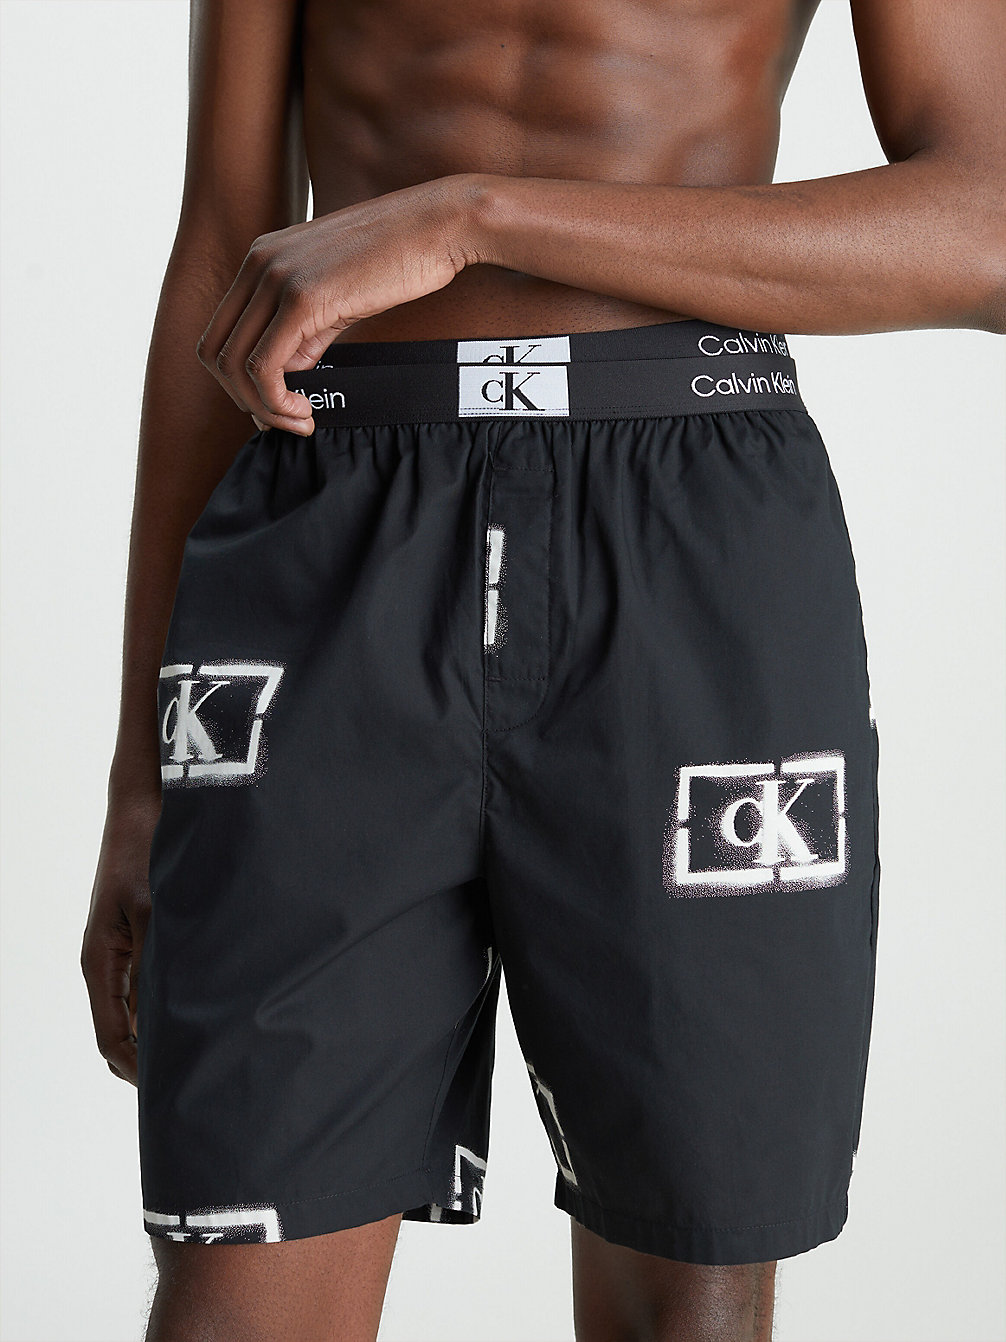 STENCIL LOGO PRINT_BLACK > Shorty Piżamy Z Bawełny Organicznej - Ck96 > undefined Mężczyźni - Calvin Klein